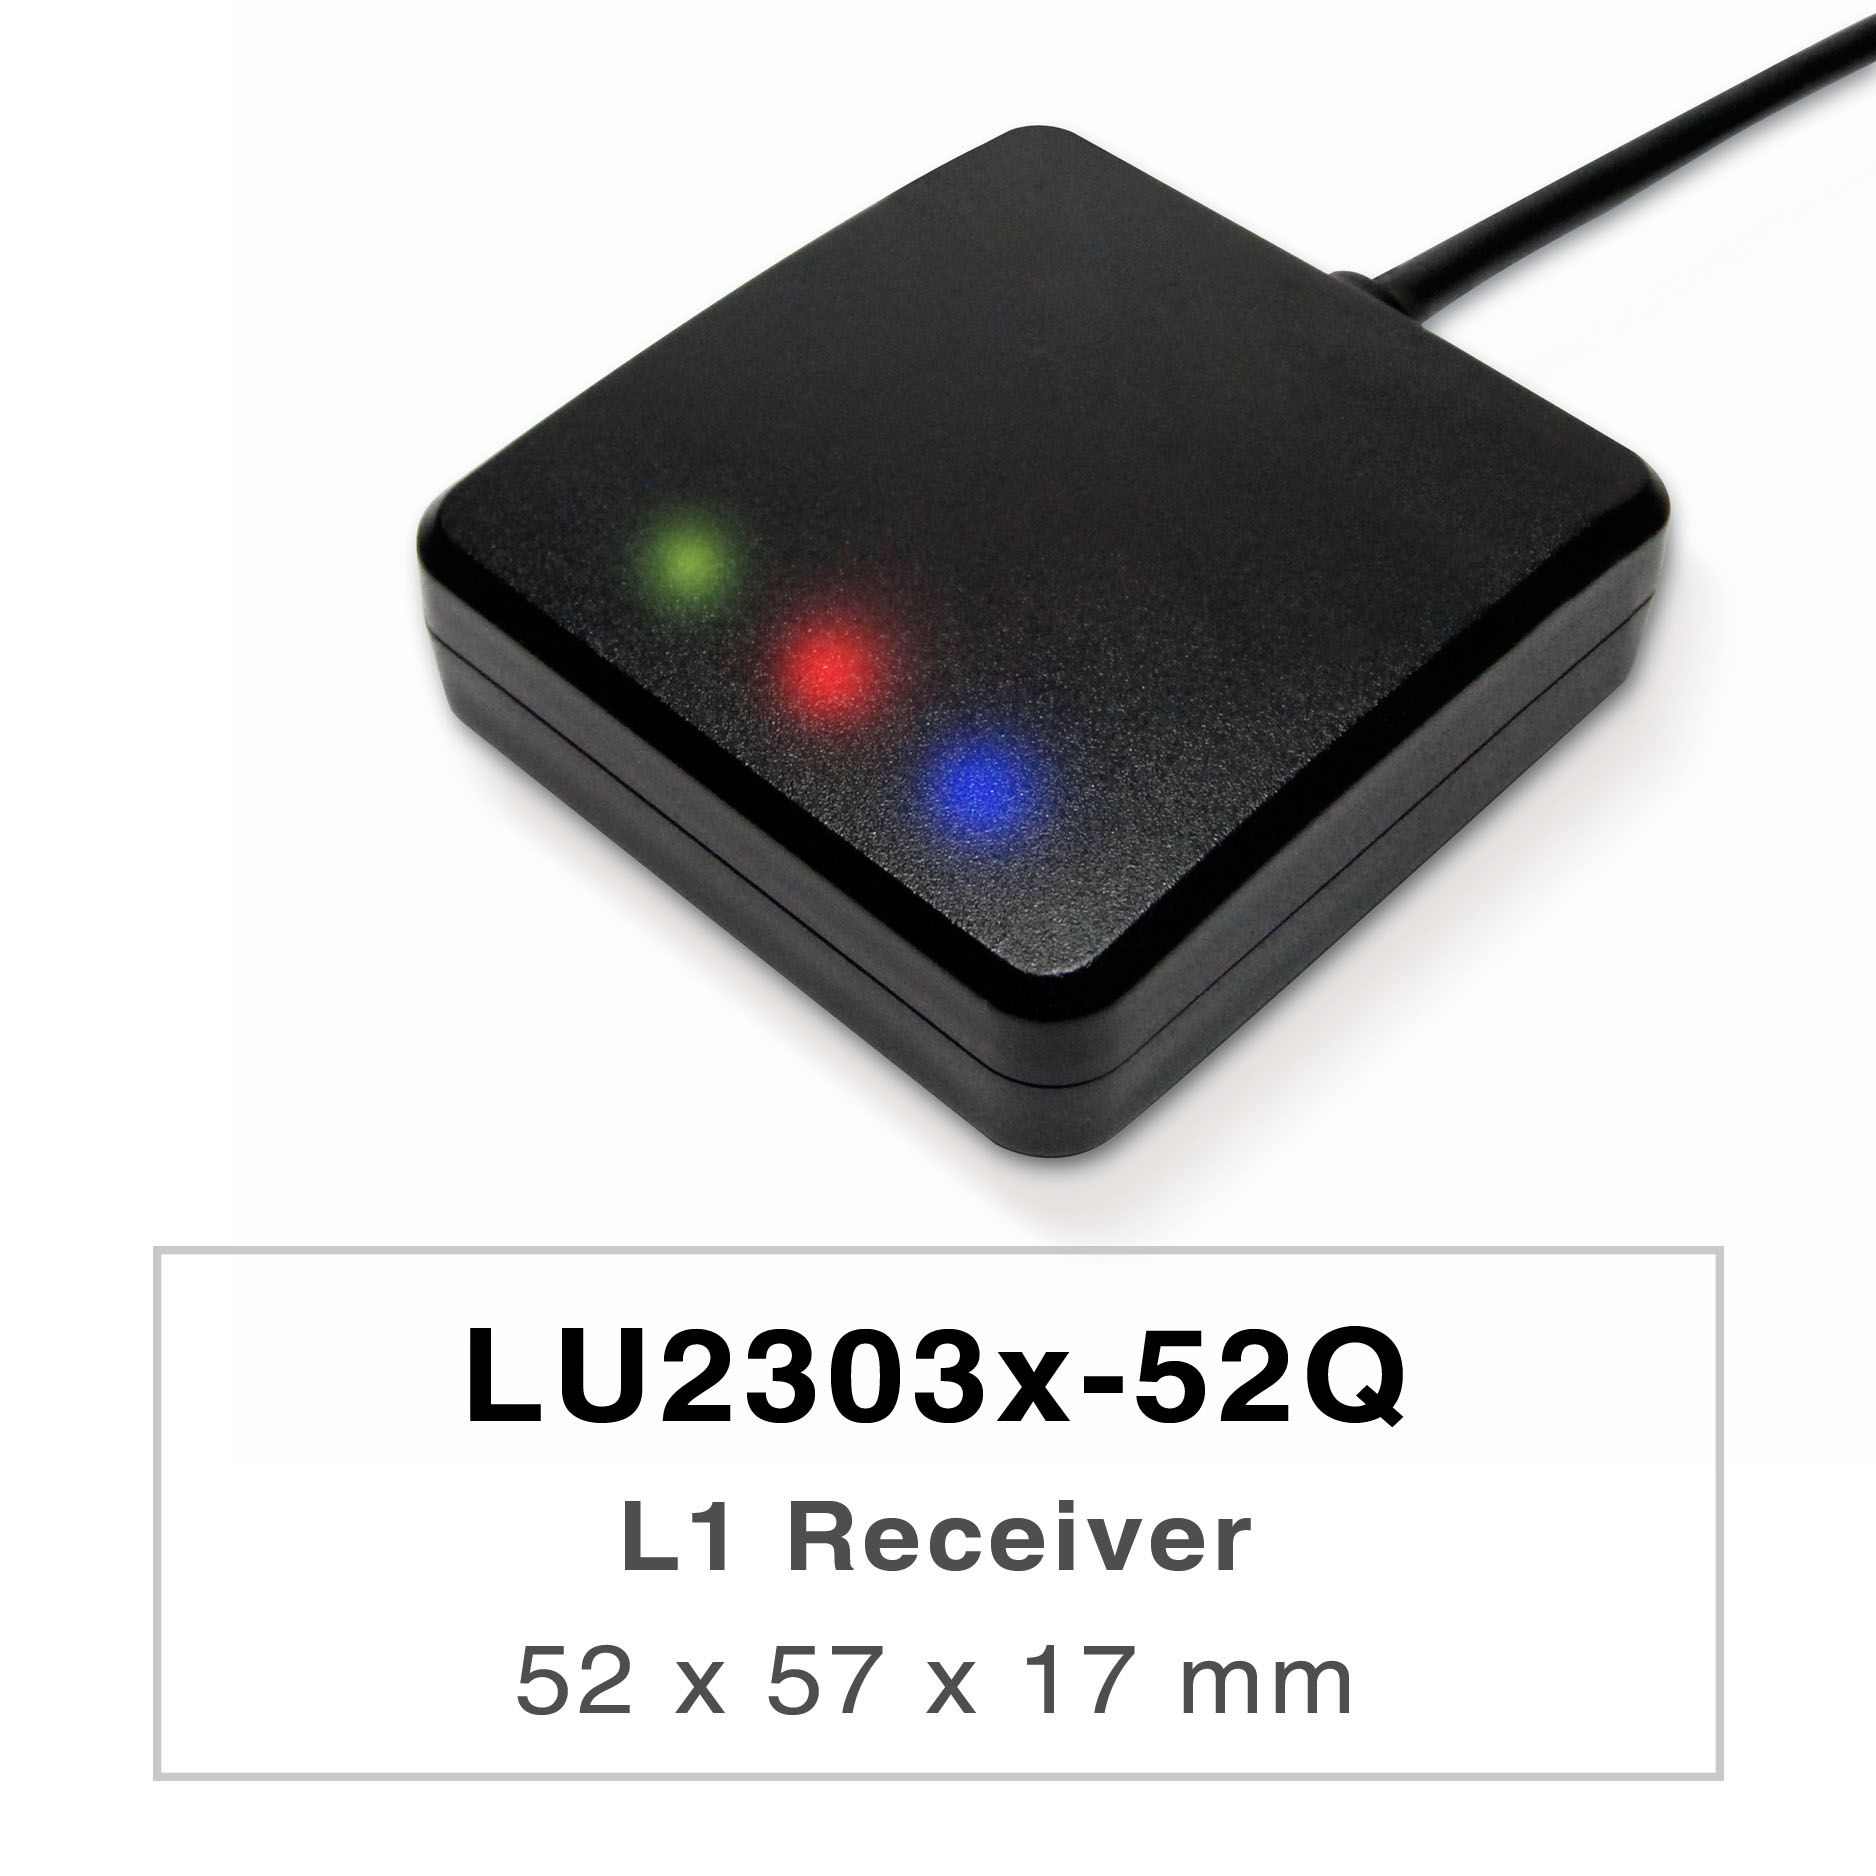 LU2303x-Vxシリーズの製品は、高性能なデュアルバンドGNSSレシーバー（または
GNSSマウス）であり、すべてのグローバル民間航法システム（GPS、GLONASS、
BDS、GALILEO、QZSS、IRNSS）を追跡することができます。